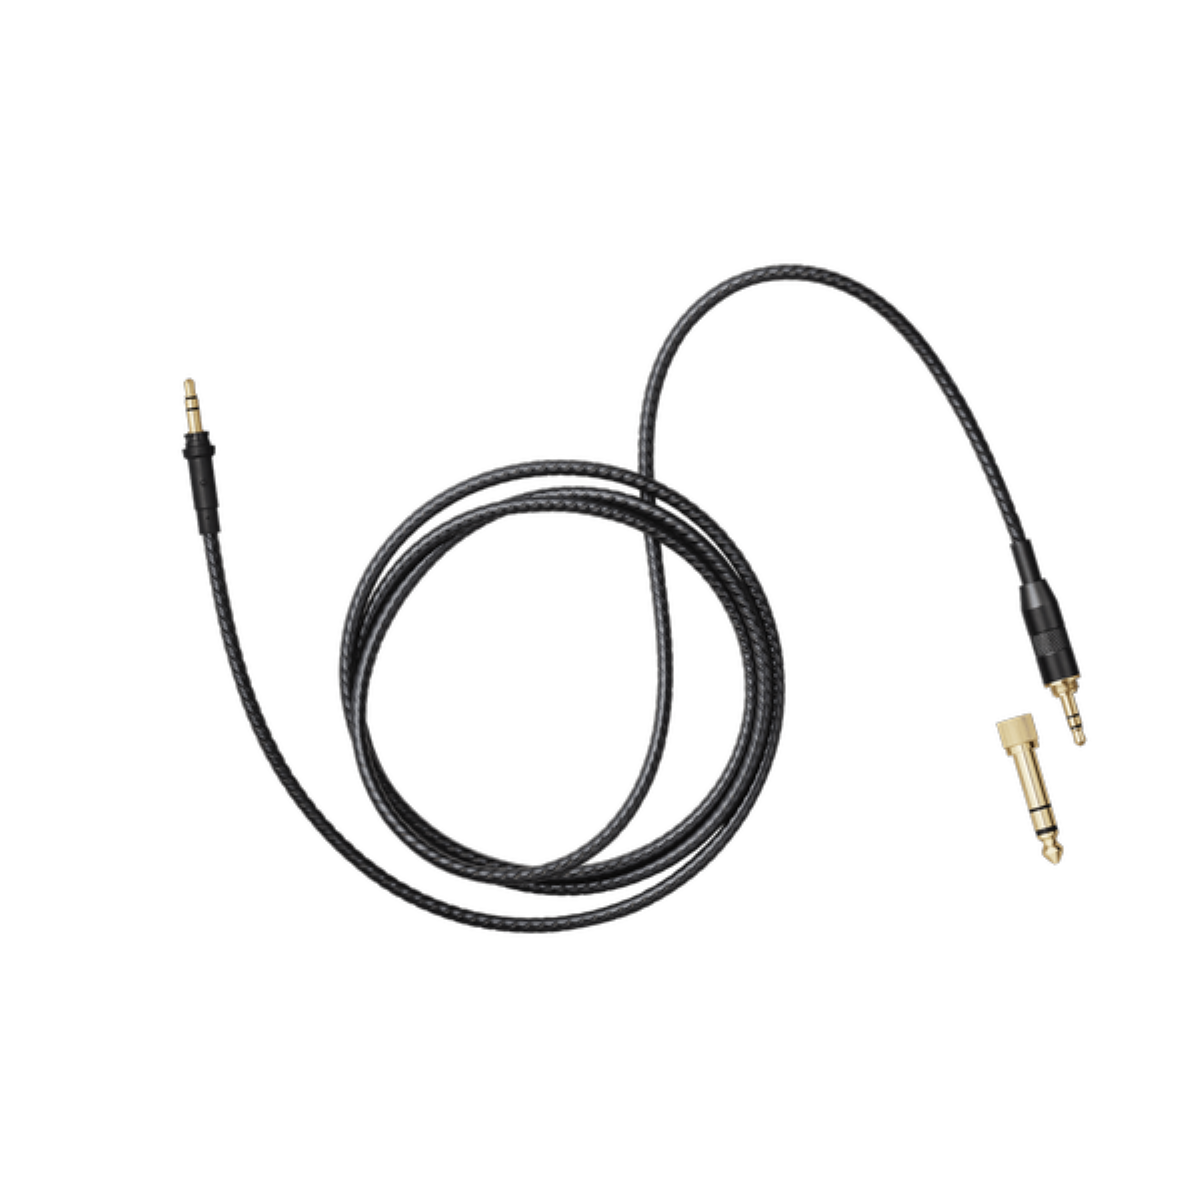 TMA-2 C15 Straight Cable - Hi-Fi Audio Cable